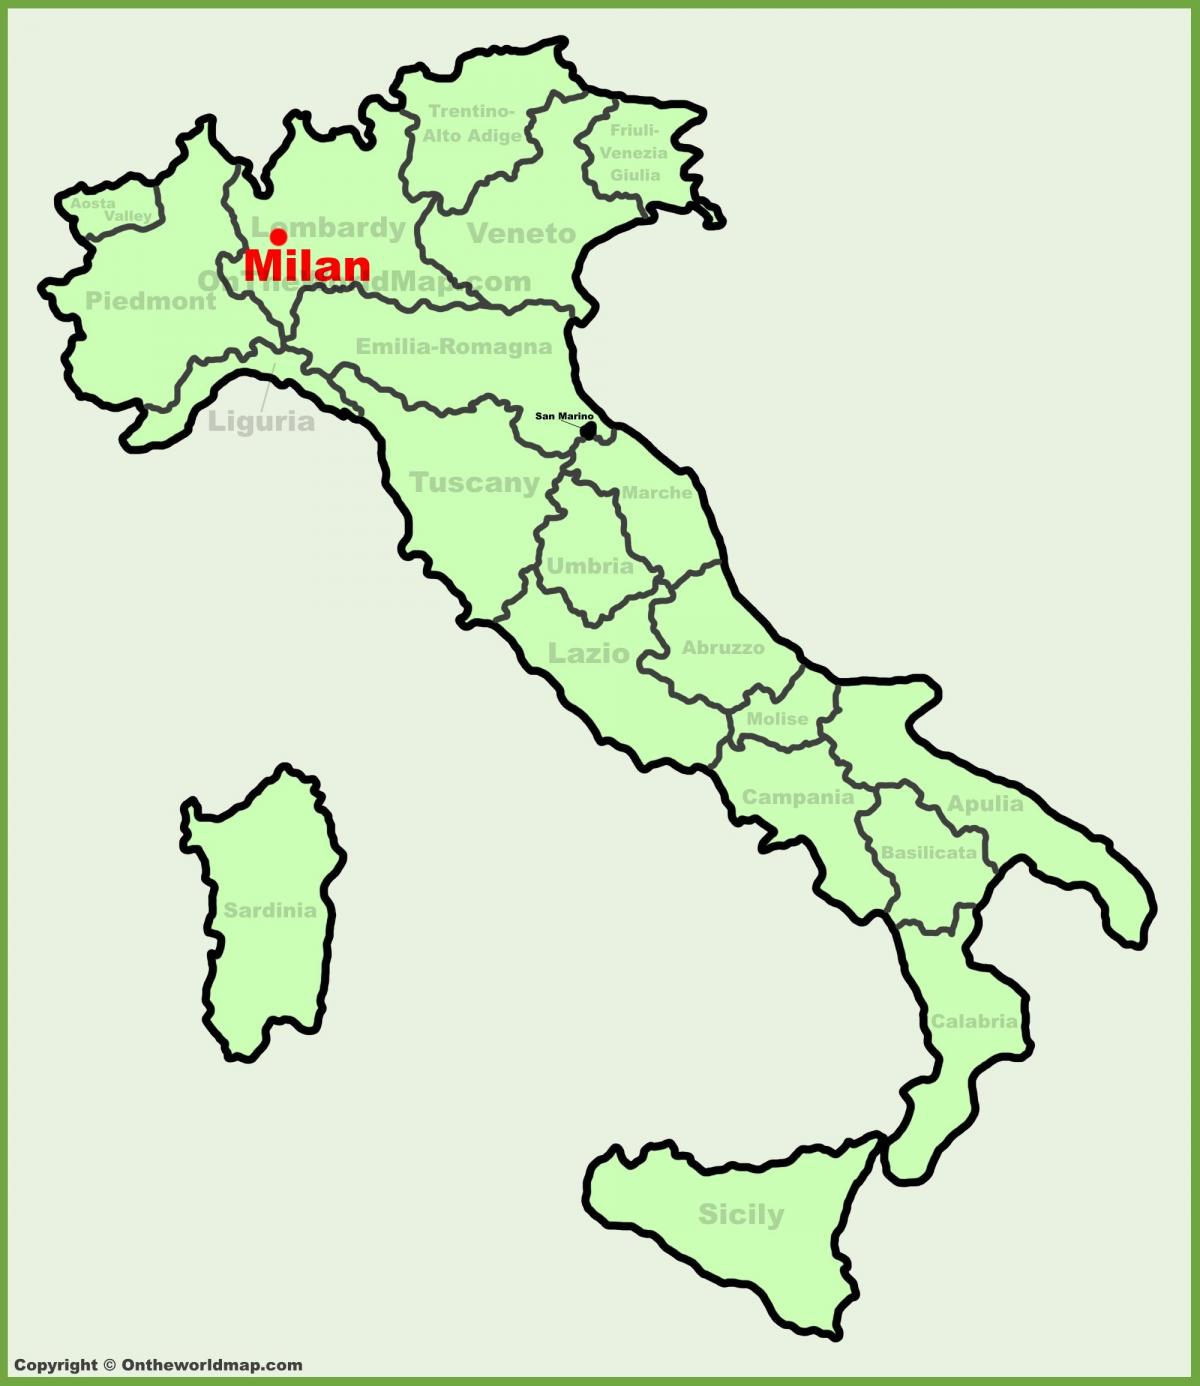 χάρτη της ιταλίας δείχνει μιλάνο